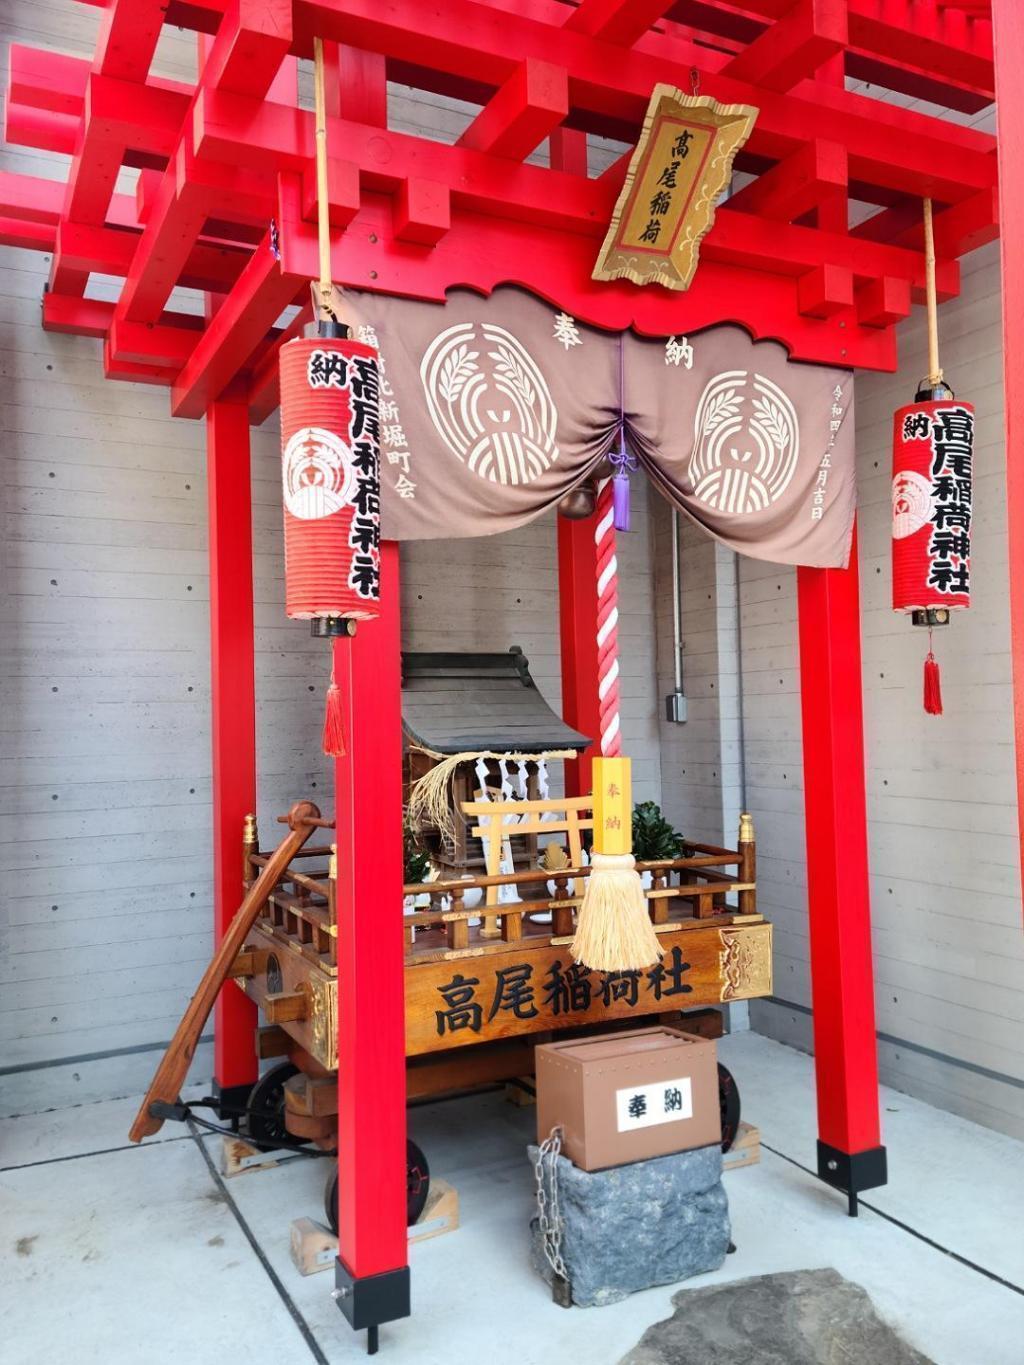  高尾稲荷神社への想い
～「記憶のかけら」を未来へつなぐ～